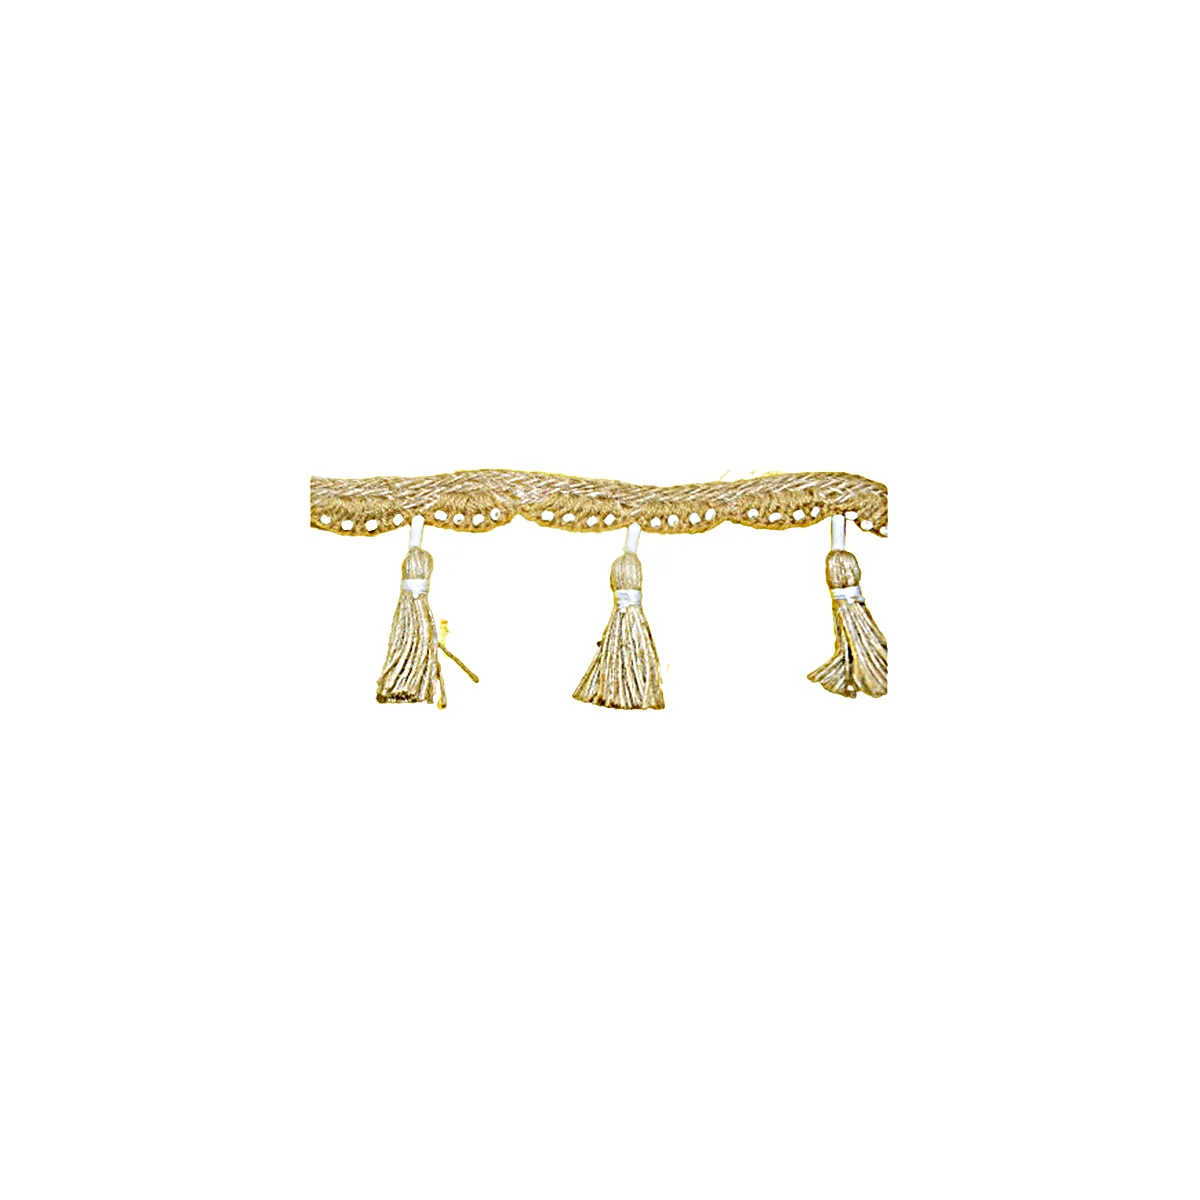 Bordure élégante en dentelle à franges dorées, taille personnalisée, perles, franges, couleur dorée, du fournisseur